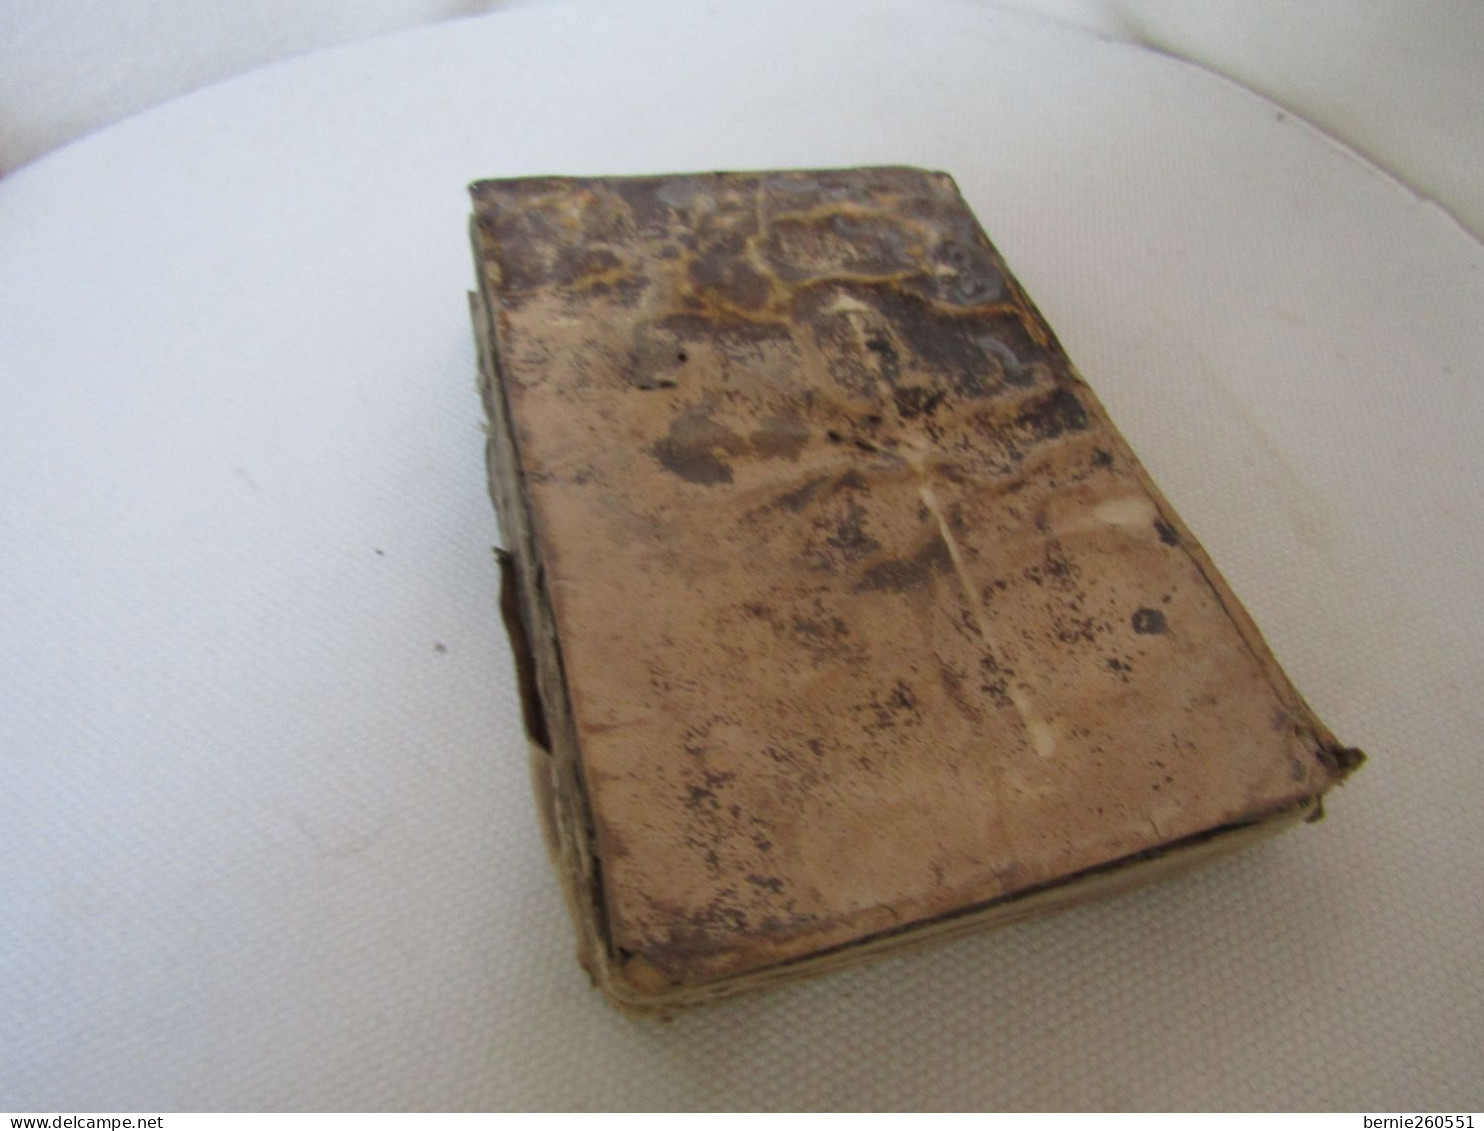 Antique Livre Moeder Godts De 1629, Vieux Flamand - Antique